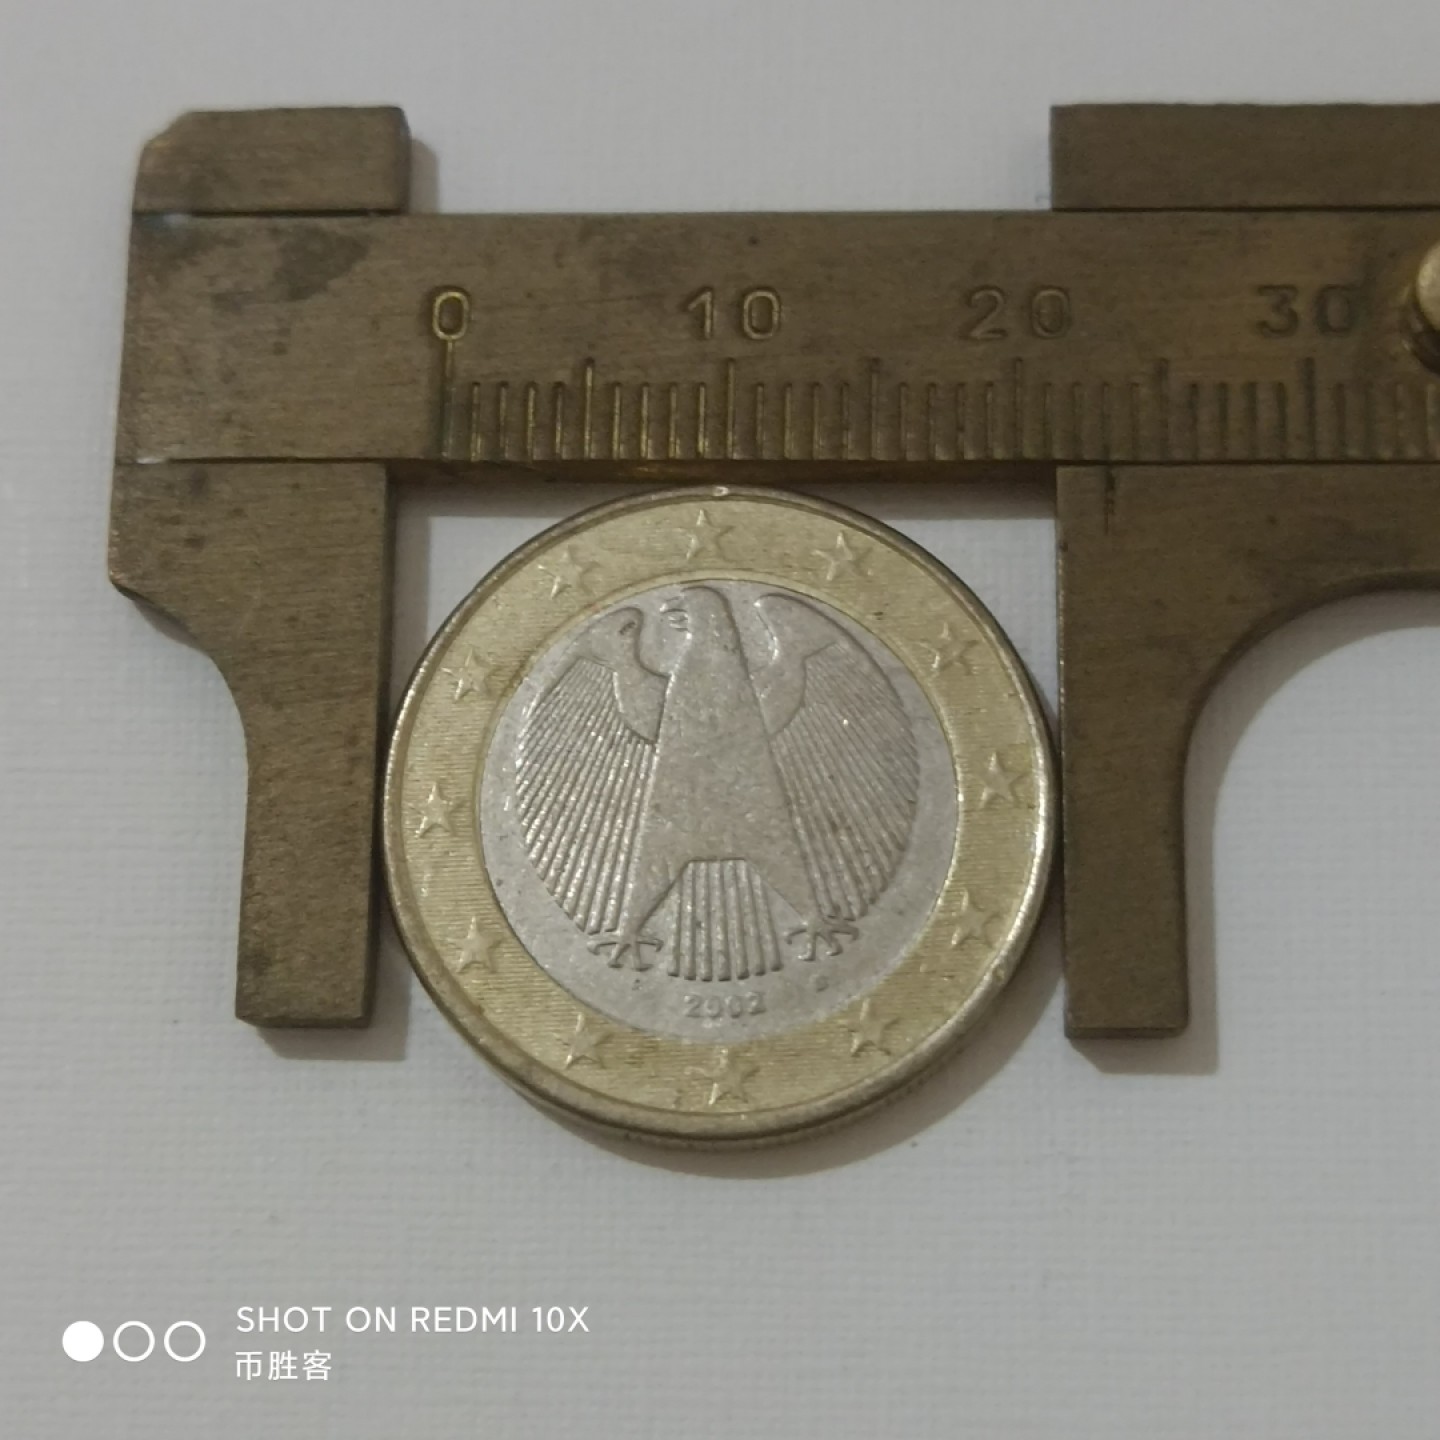 德国普通版1欧元硬币
图案是象征德意志主权的老鹰
另一面是欧洲地图
直径 23.25毫米，重量7.5克，厚度2.33毫米